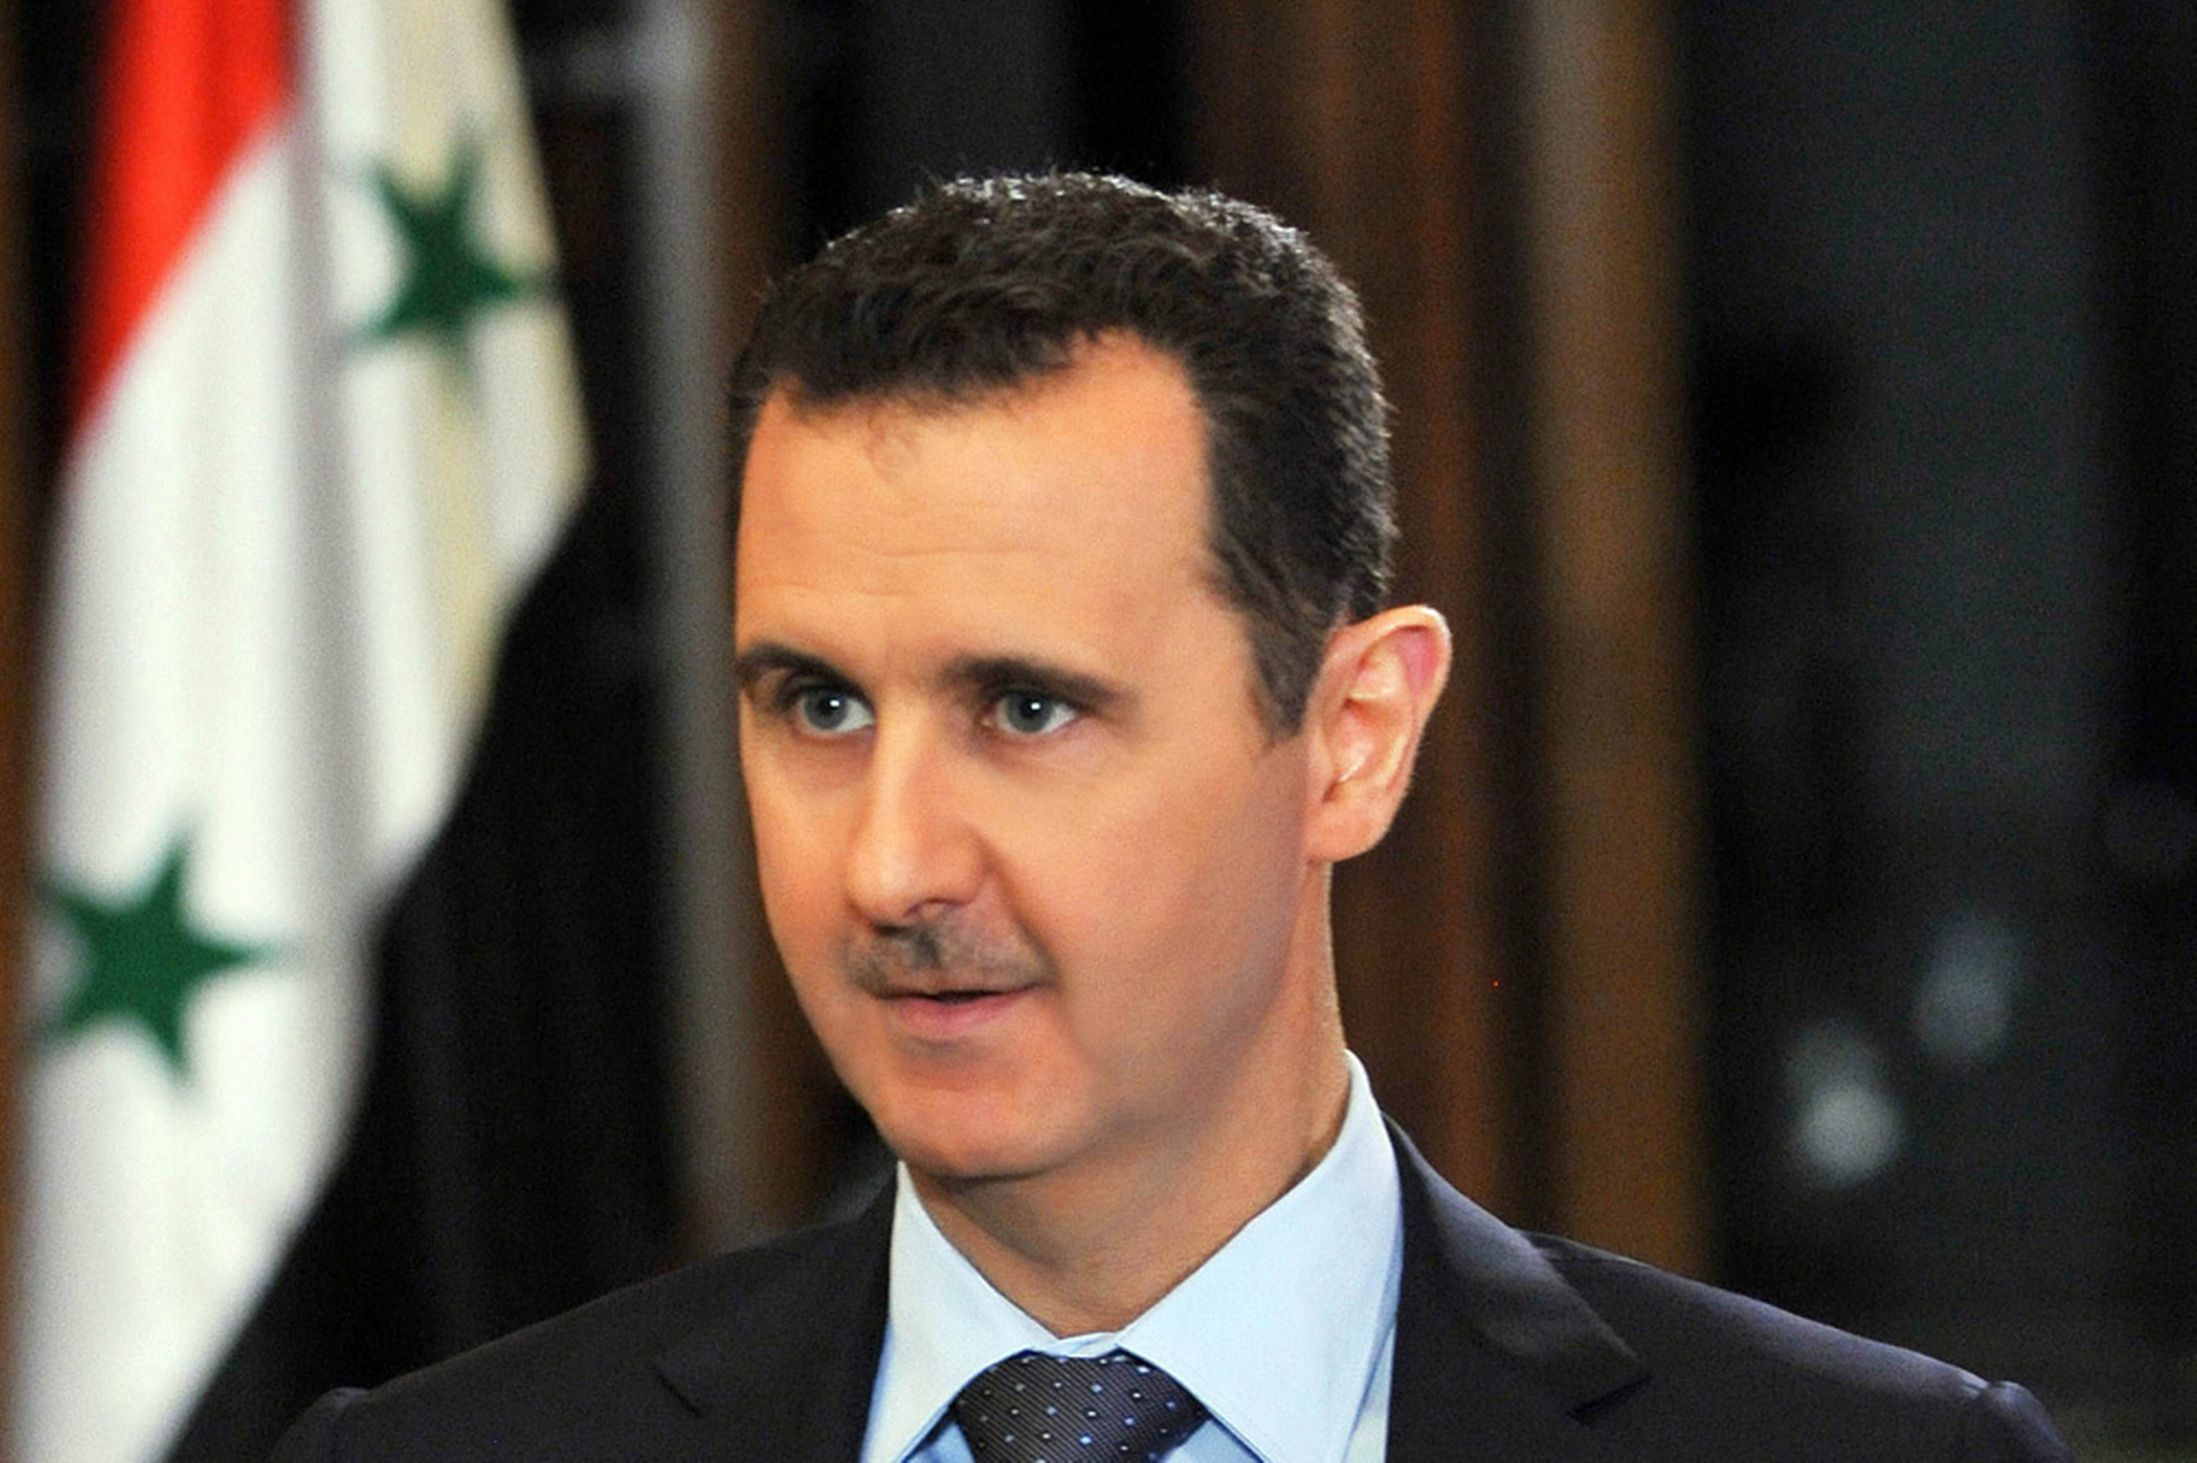 الرئيس الأسد للشباب السوري المغترب: توجهوا الى سفارتنا لتثبيت لجوءكم وسورية ترحب بكم